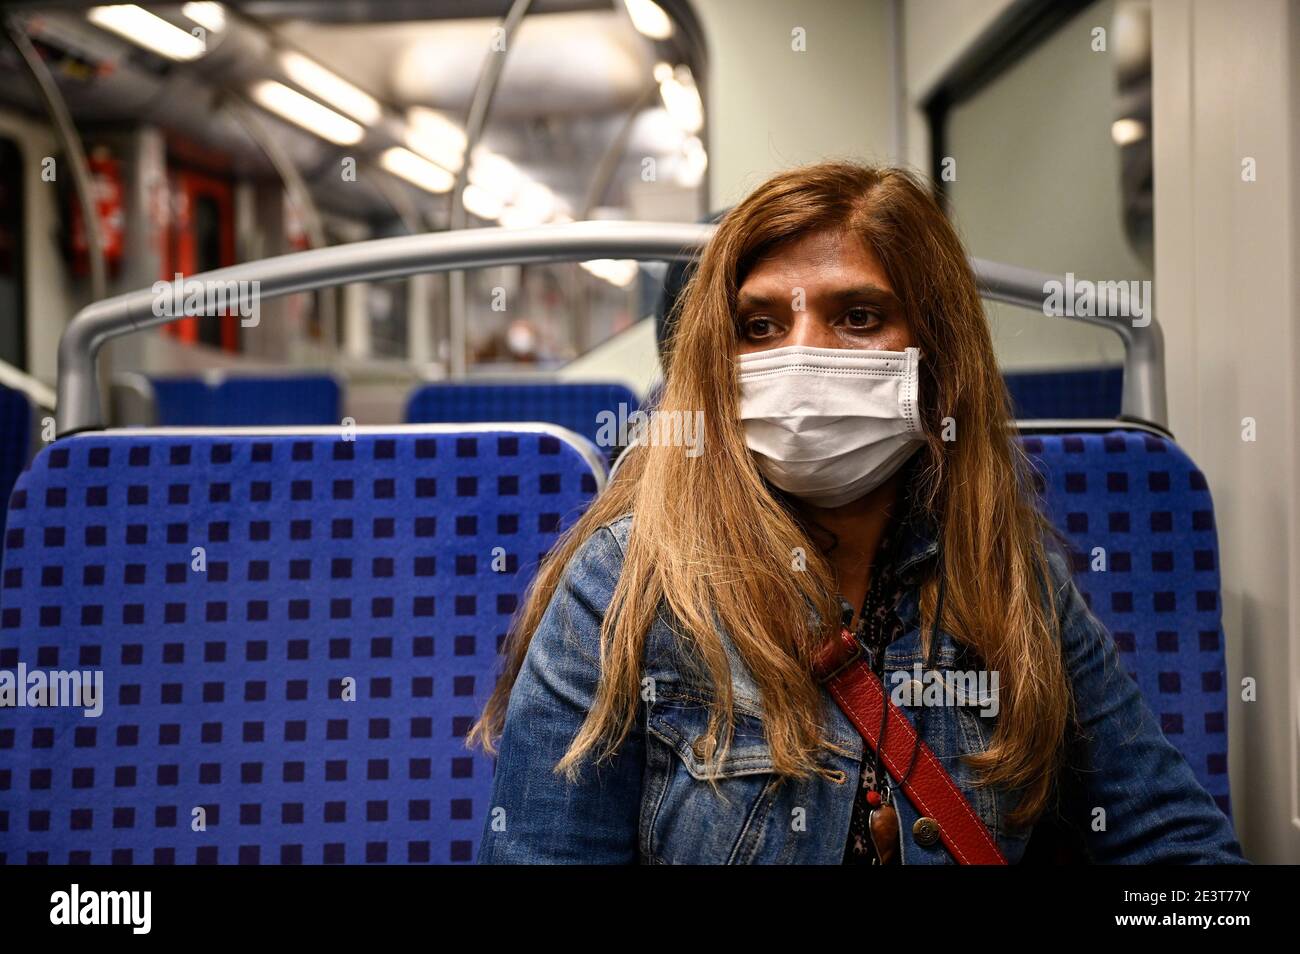 Germania, Amburgo, Corona Virus, COVID-19 , la donna indossa una maschera medica protettiva , made in China, in treno sotterraneo Foto Stock